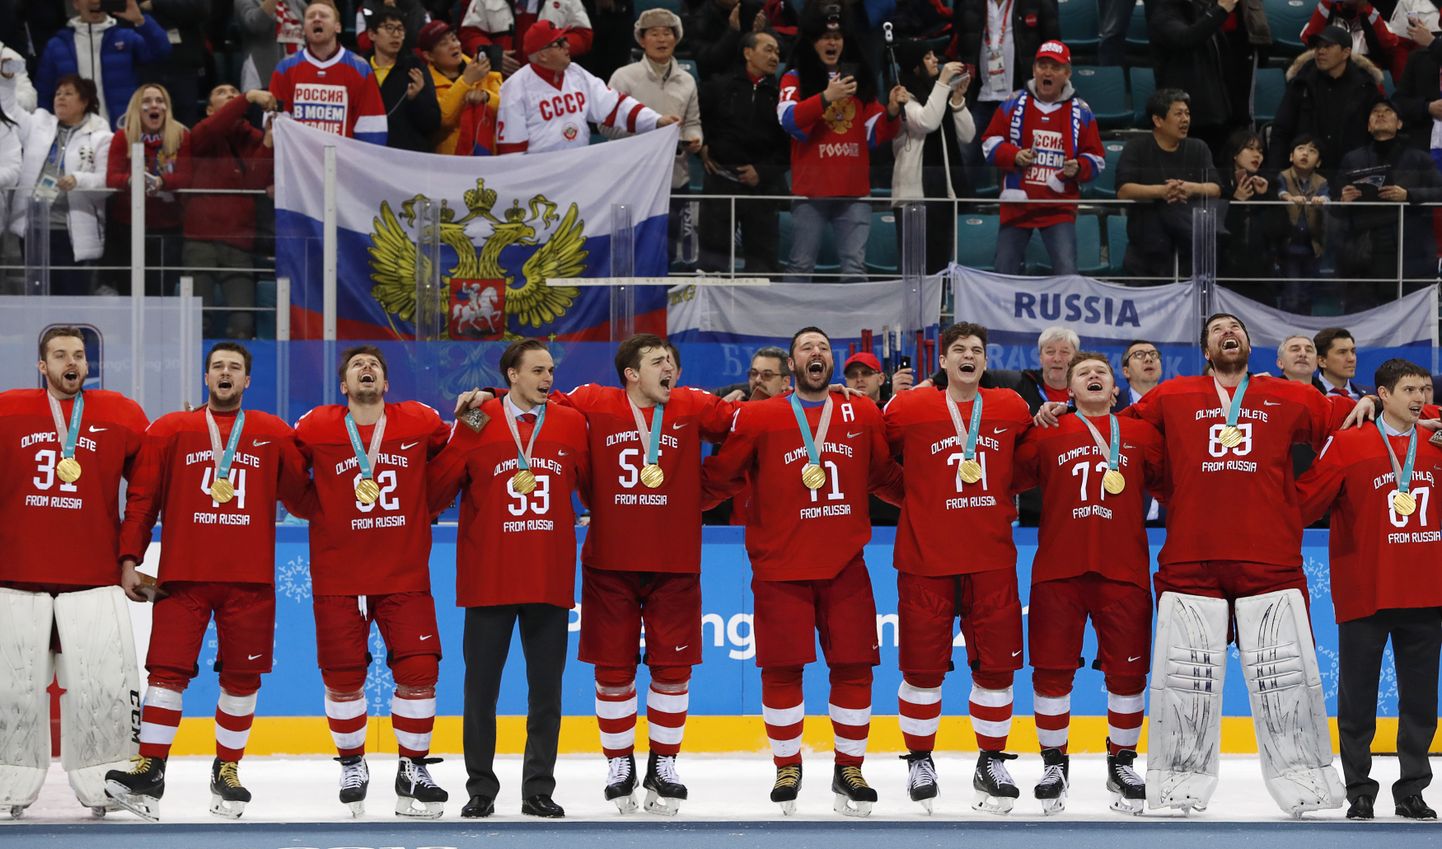 Neli aastat tagasi võitsid venelased Pyeongchangi olümpia hokiturniirilt kulla. Kas koroonaviirus võib venelaste võimaluse tänavu rikkuda?